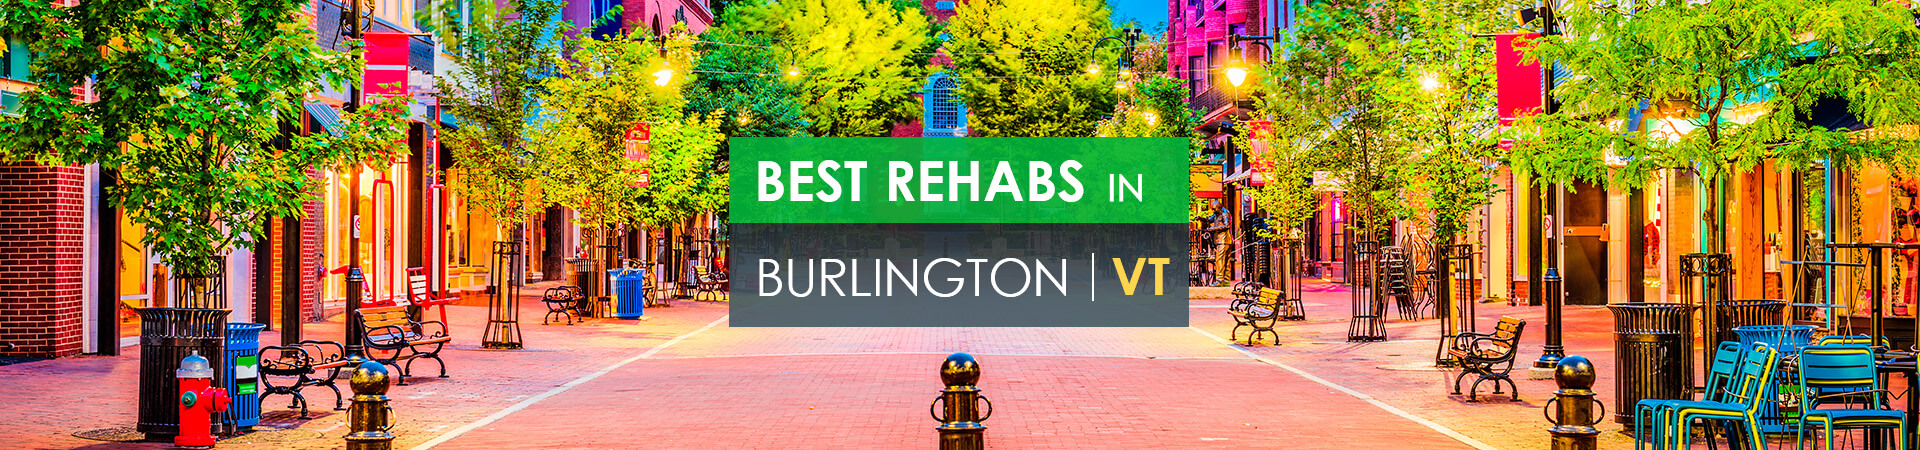 Best rehabs in Burlington, VT